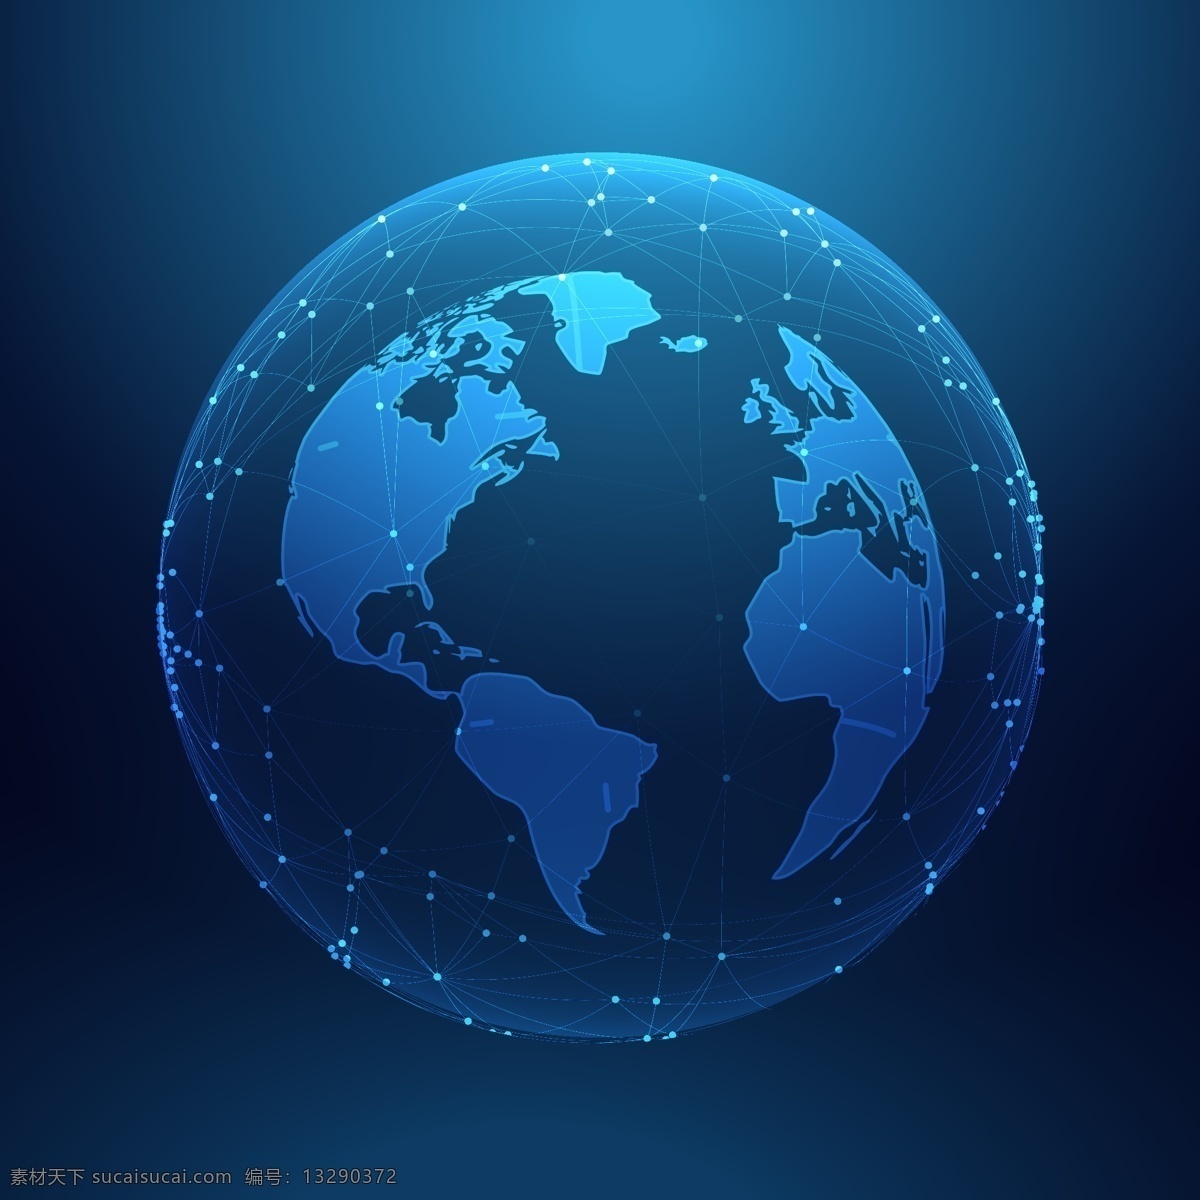 科技地球 地球 科技背景 蓝色背景 设计素材 背景图片 卡通地球 蓝色星球 星球 网络 信息传输 现代科技 数码产品